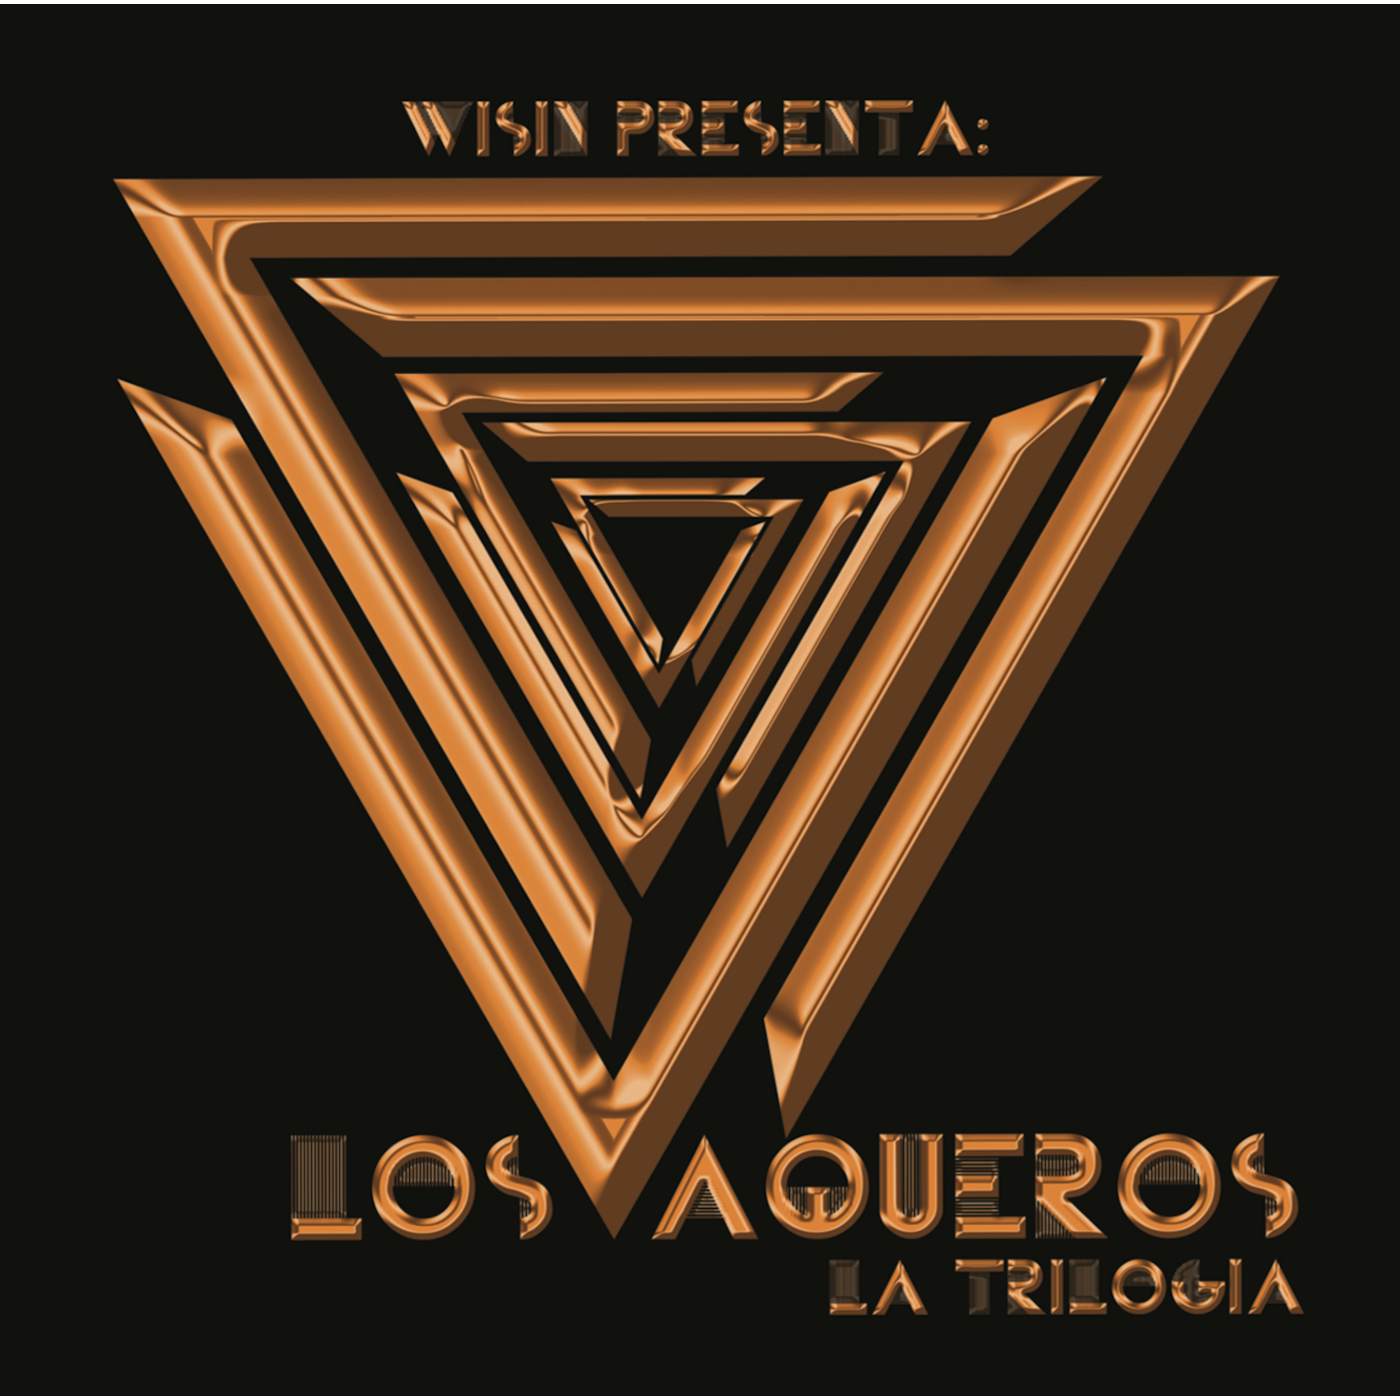 Wisin LOS VAQUEROS: LA TRILOGIA CD